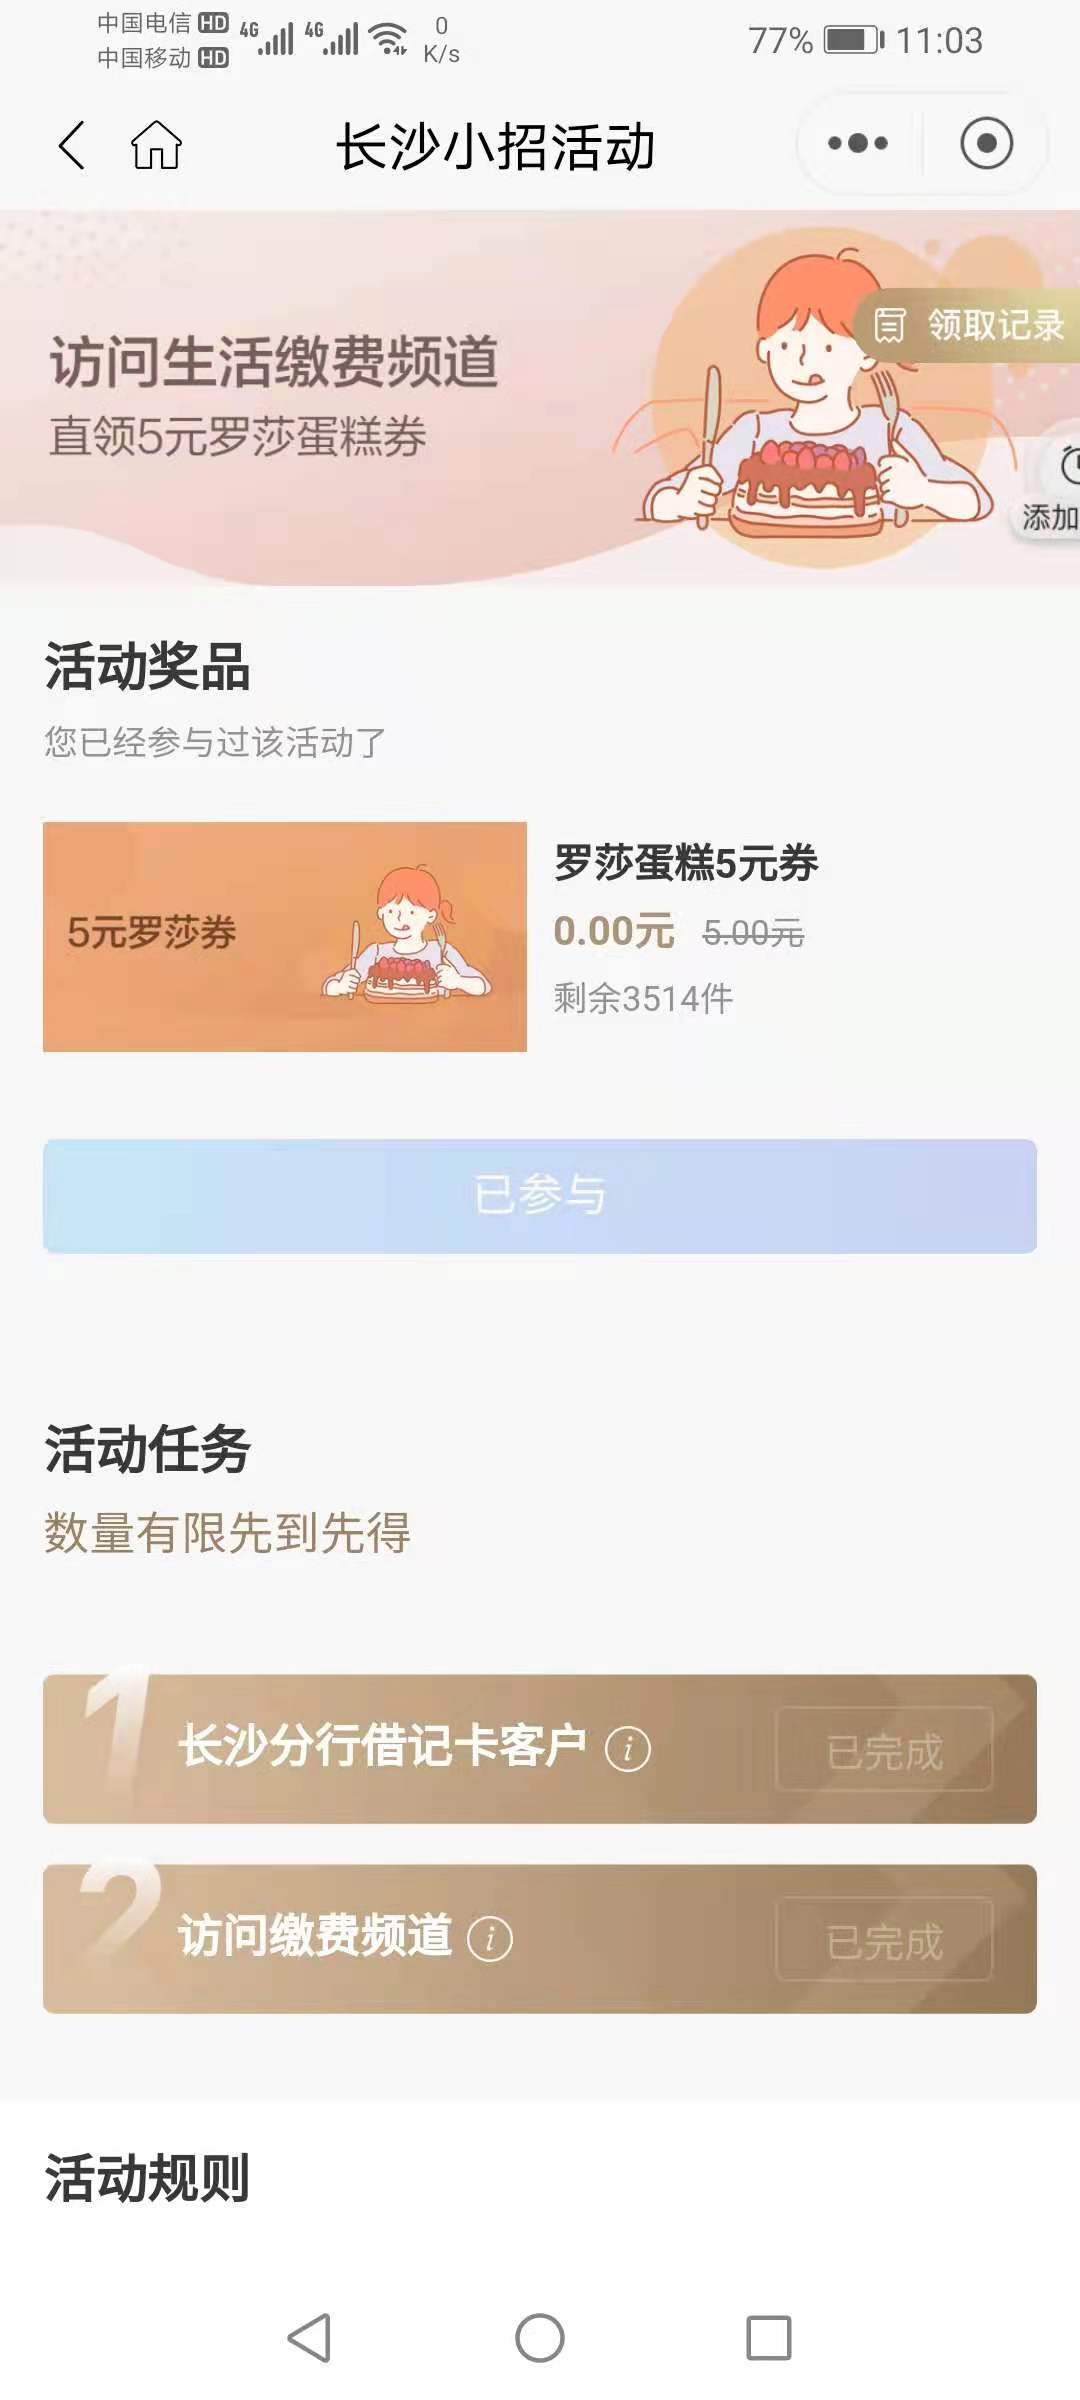 招行15元蛋糕卷-惠小助(52huixz.com)